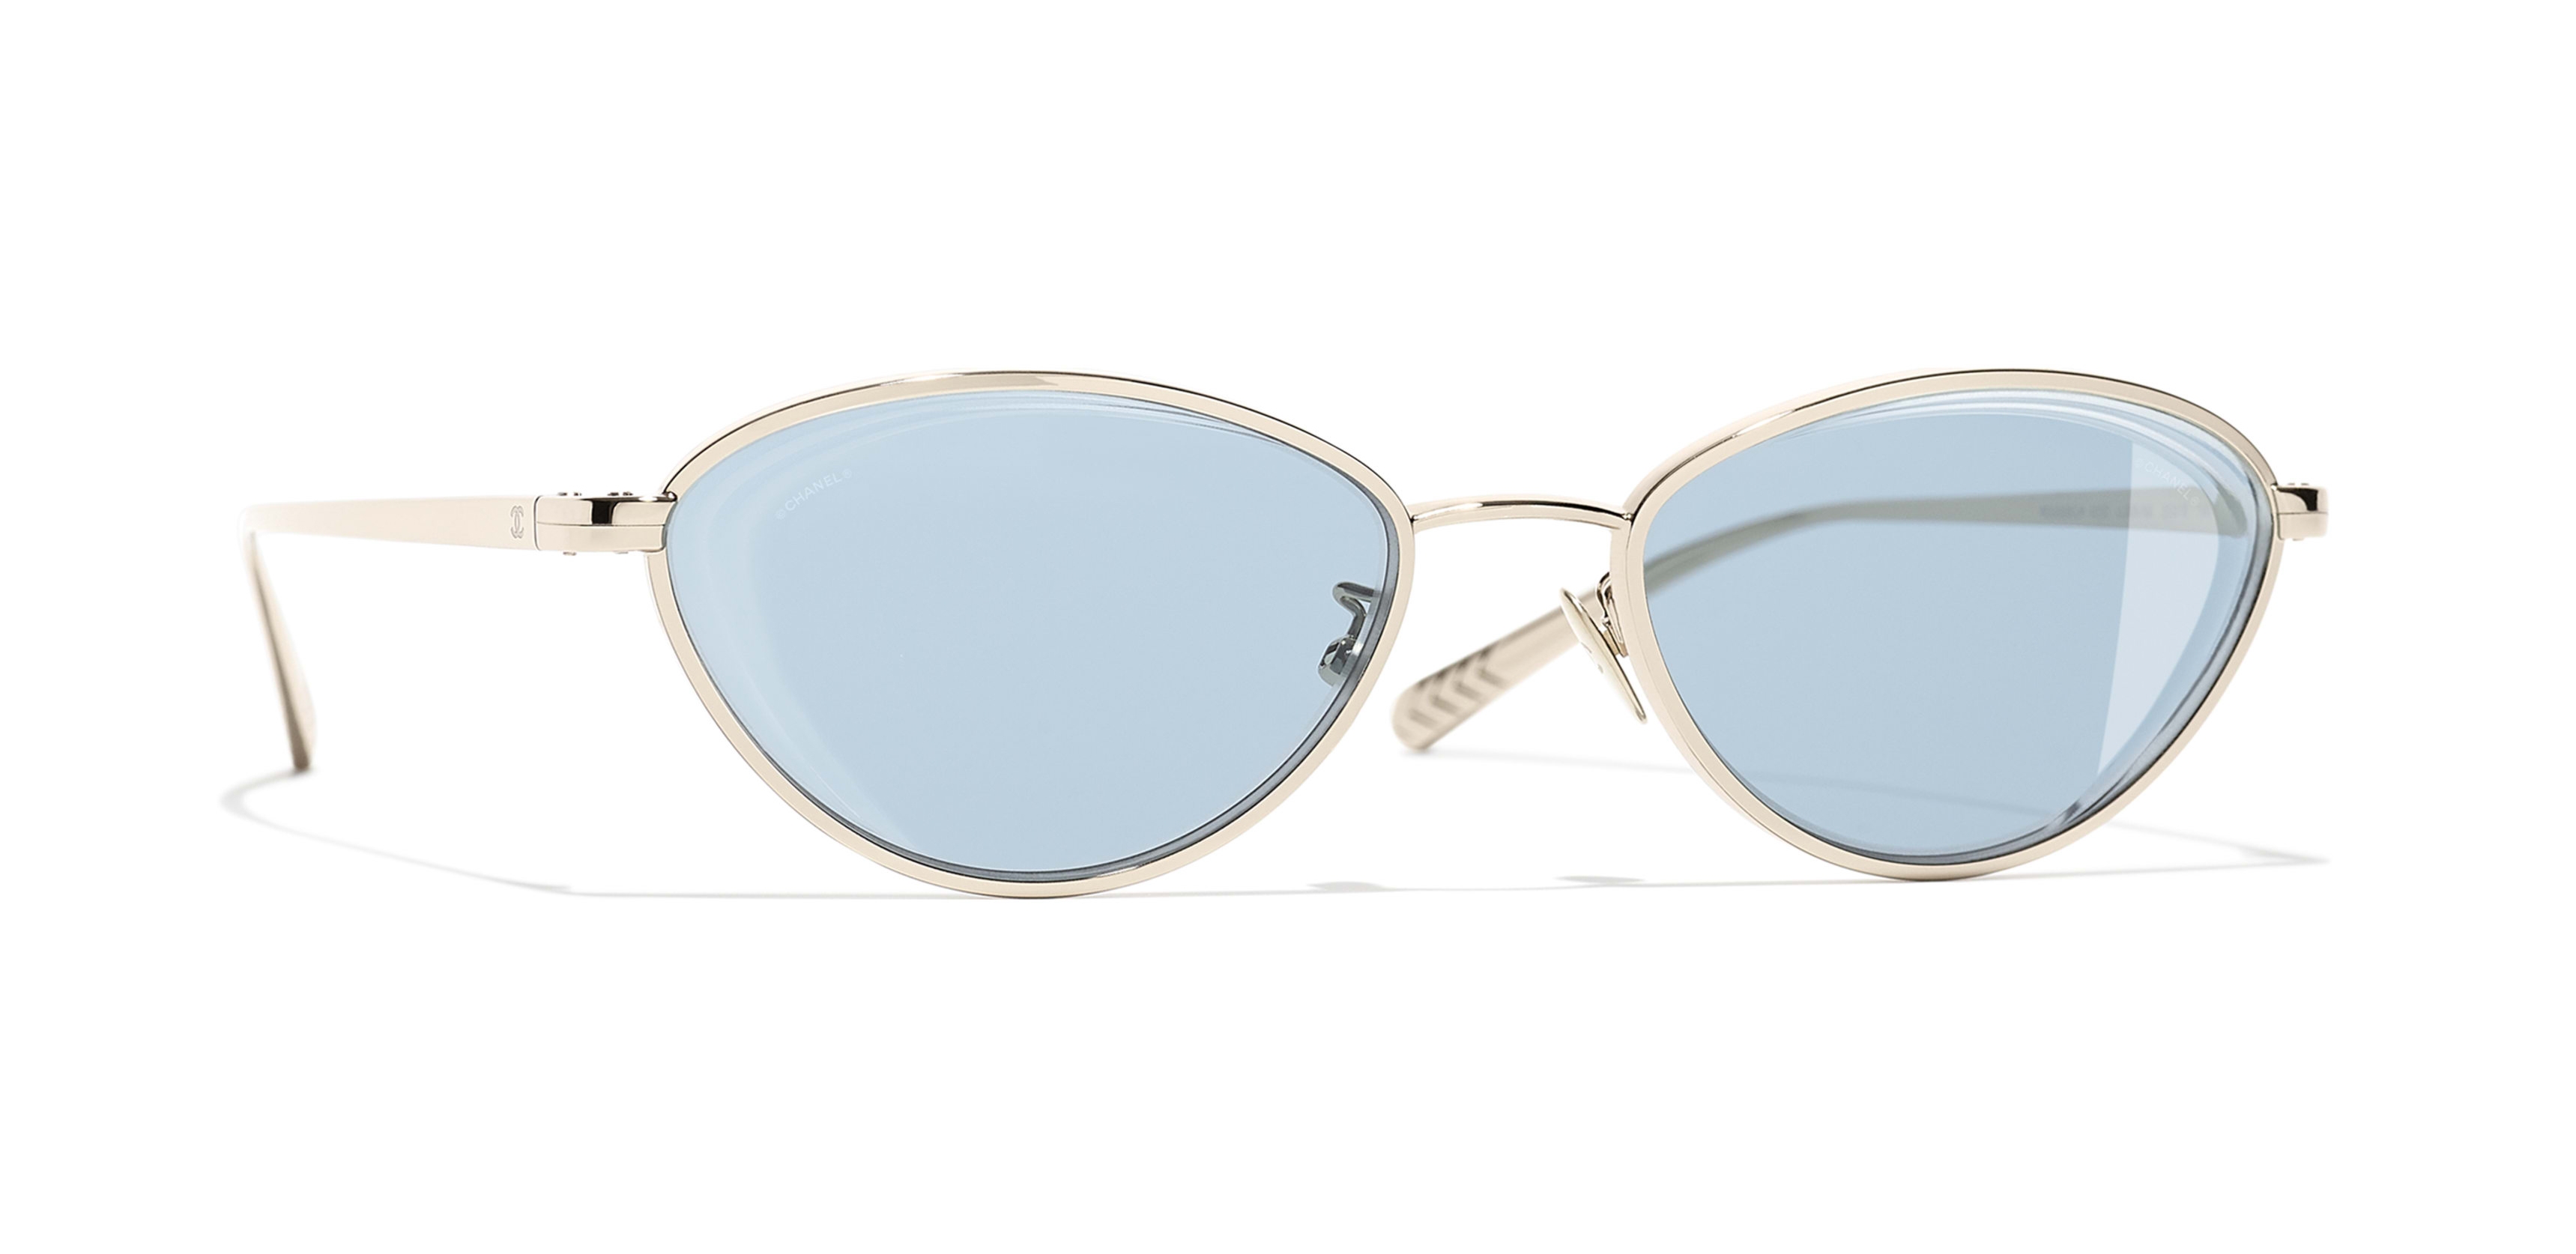 Chanel - Oval Sunglasses - Dark Blue - Chanel Eyewear - Avvenice